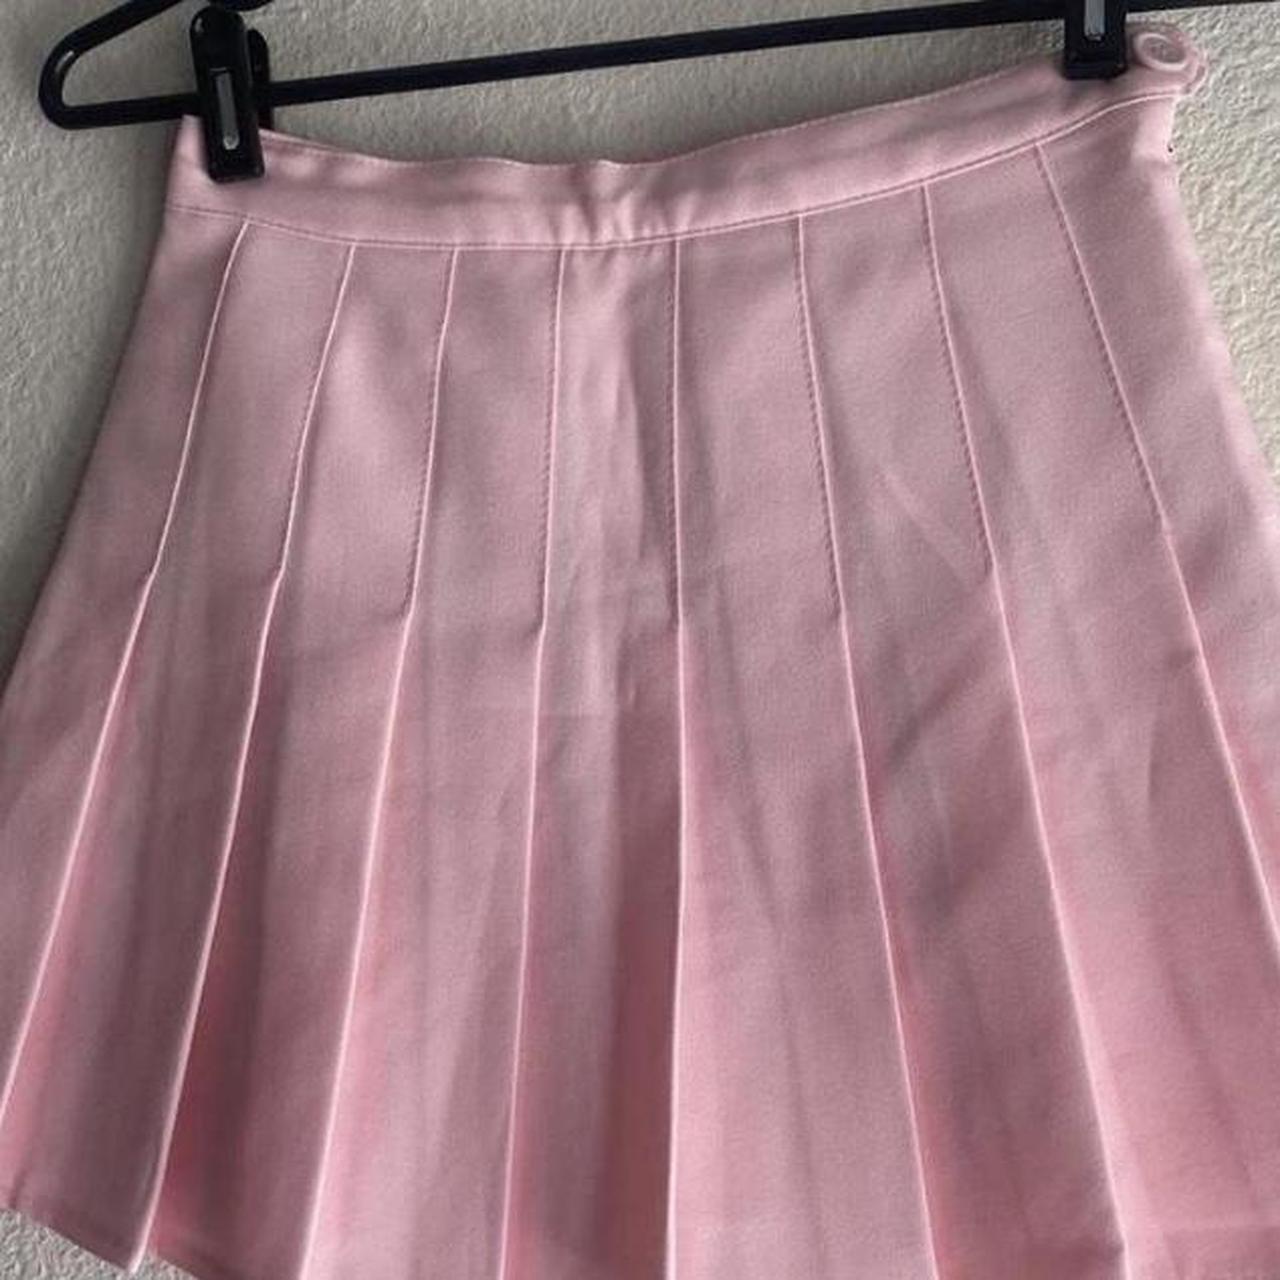 pink tennis skirt ໒꒰ྀིっ˕ -｡꒱ྀི১ ᡴꪫ classic... - Depop